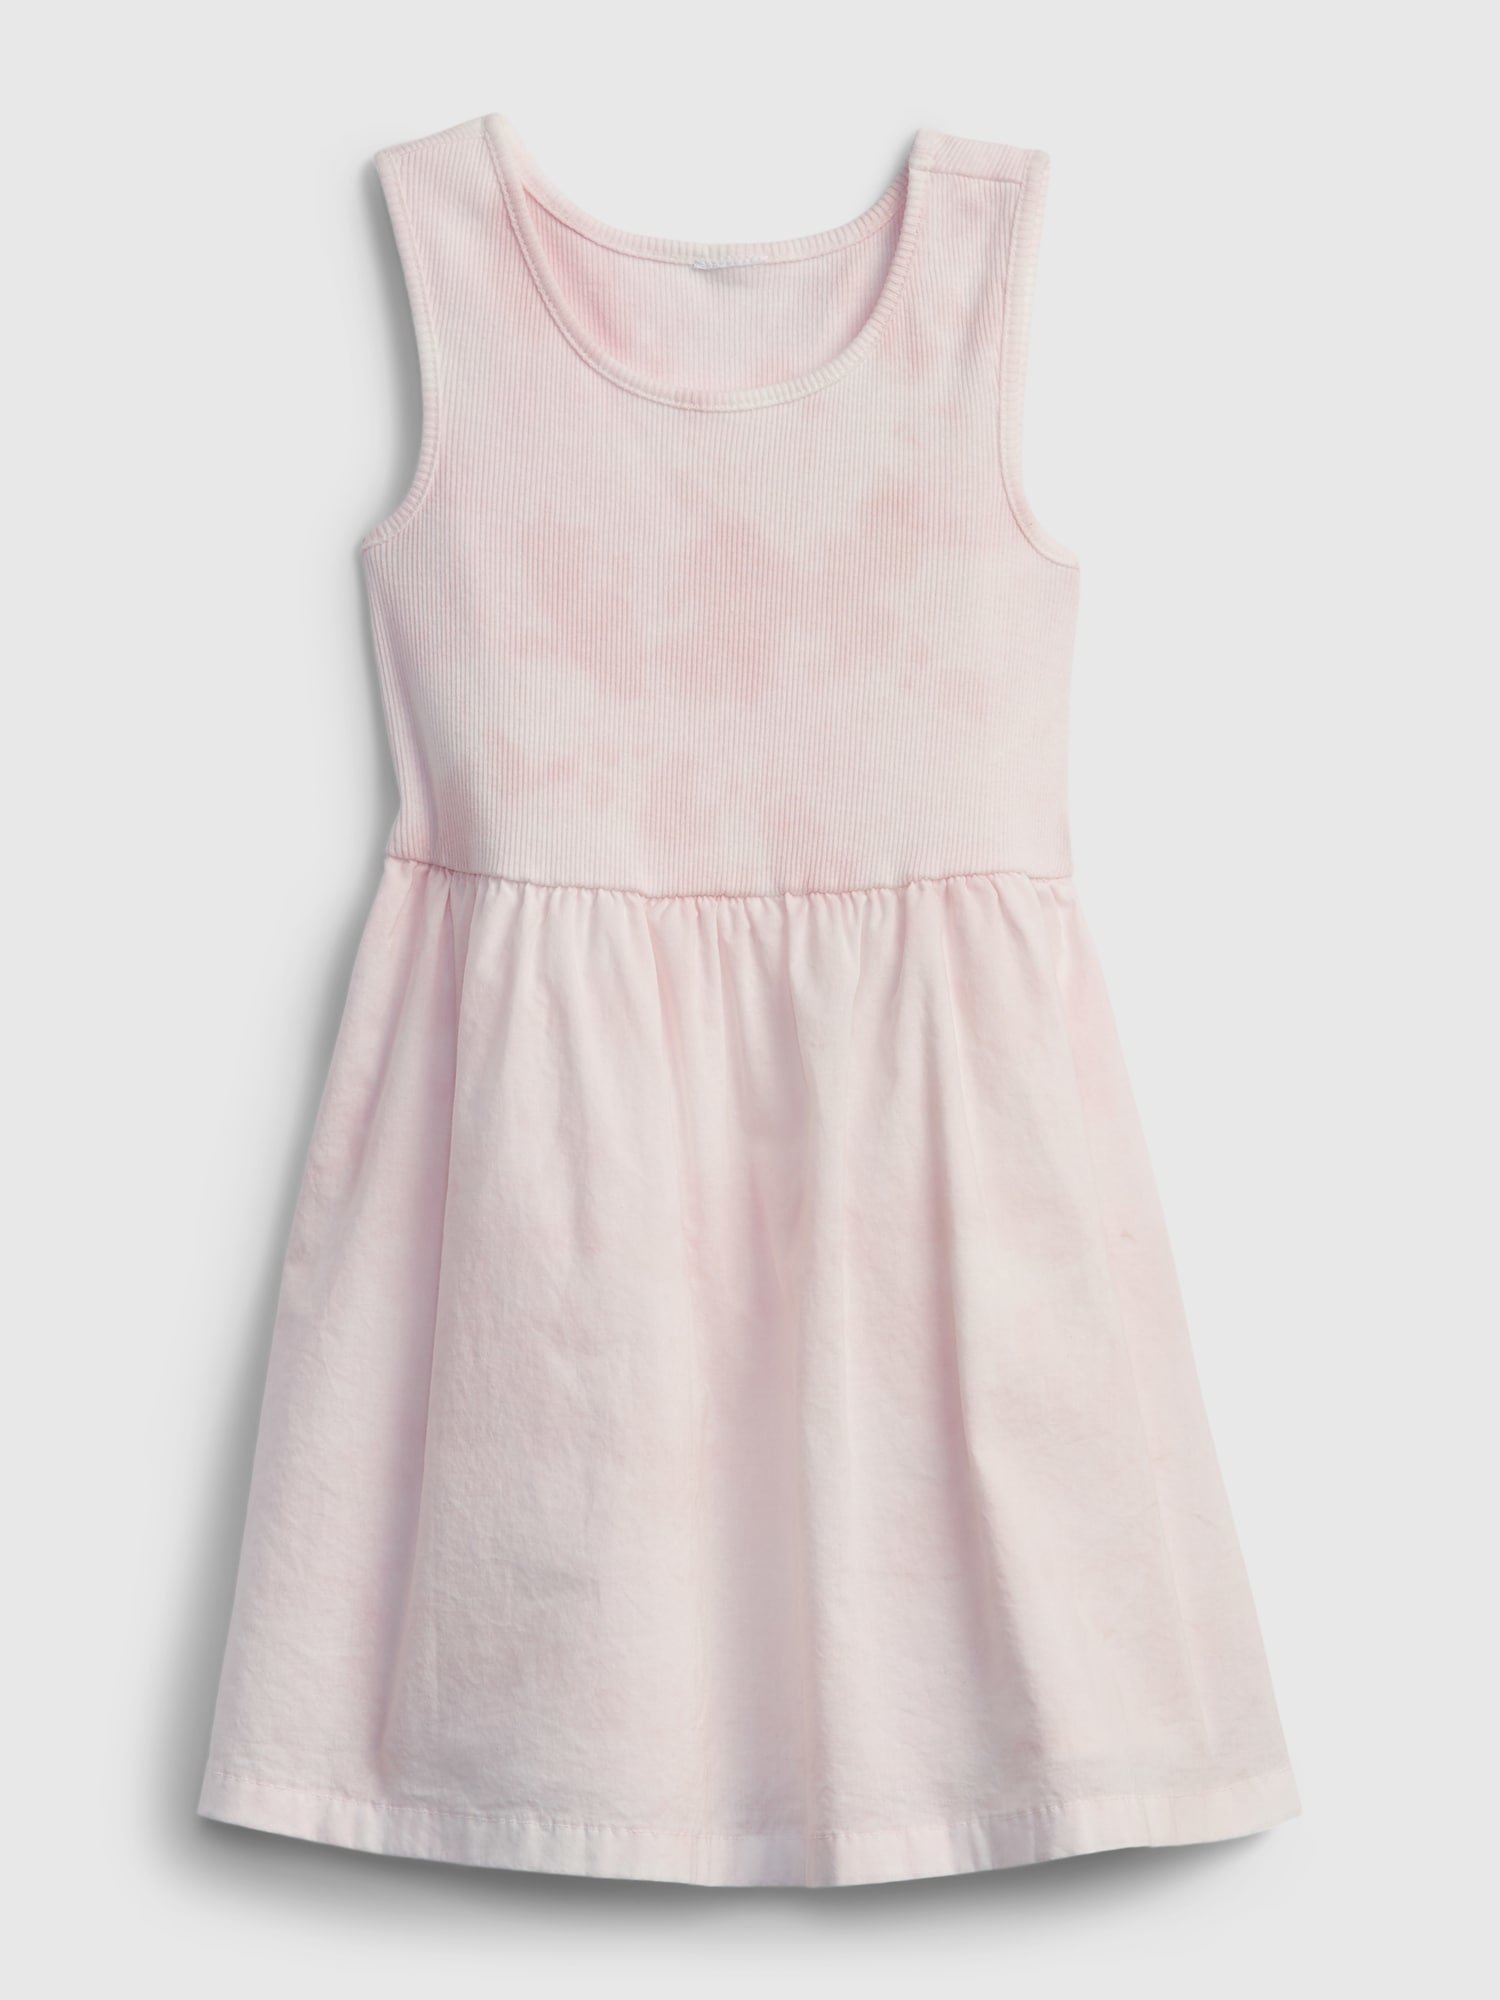 Fotografie Růžové holčičí dětské šaty mix-media tank dress